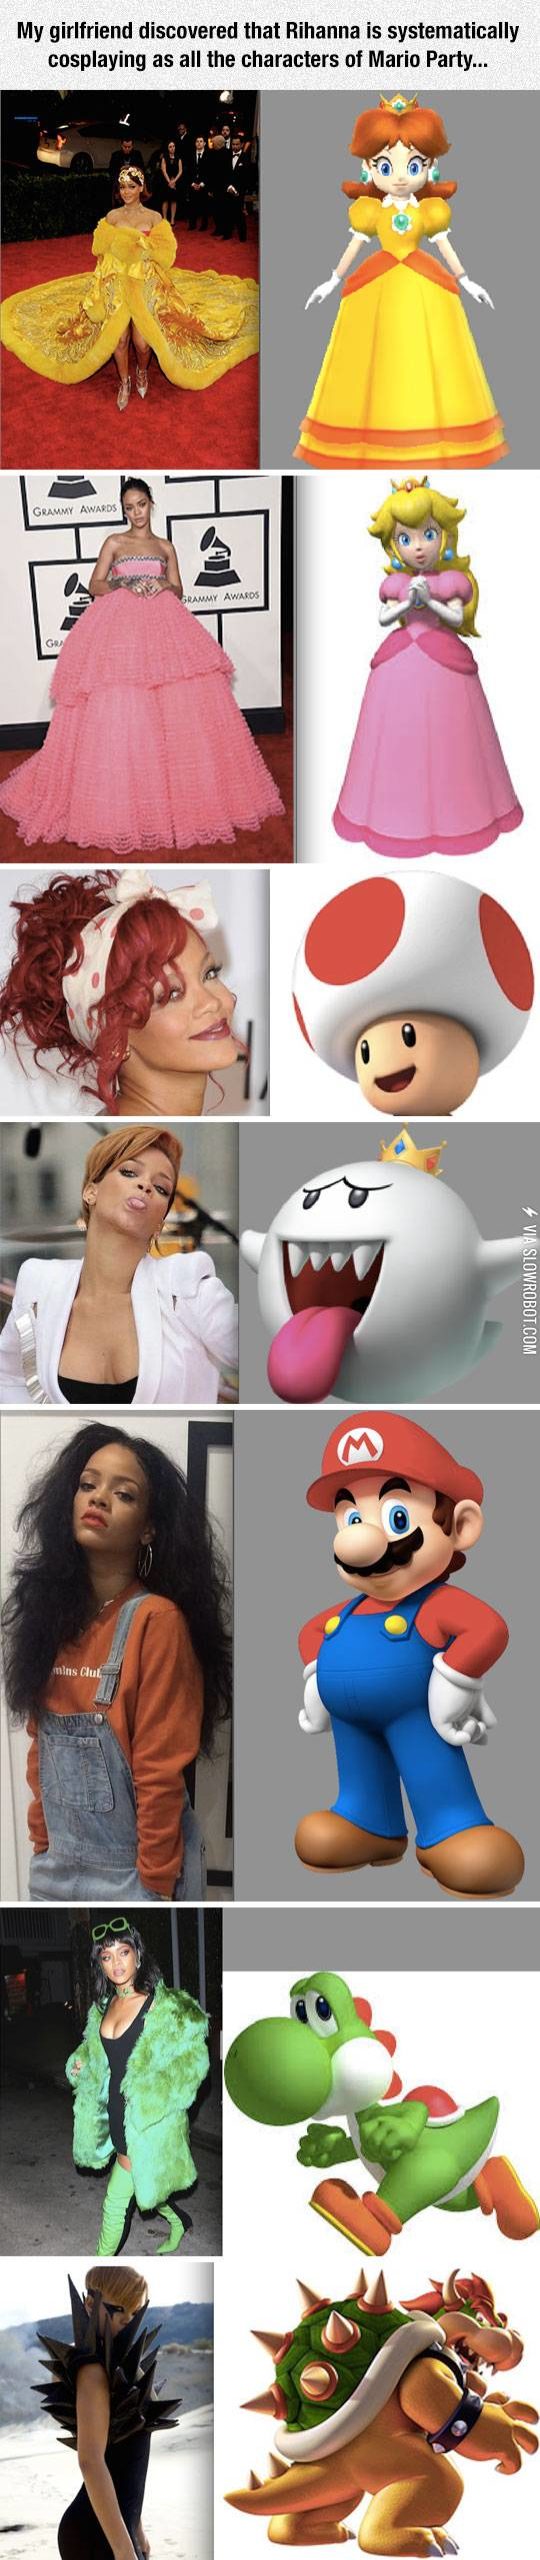 Rihanna+Cosplaying+Mario+Party